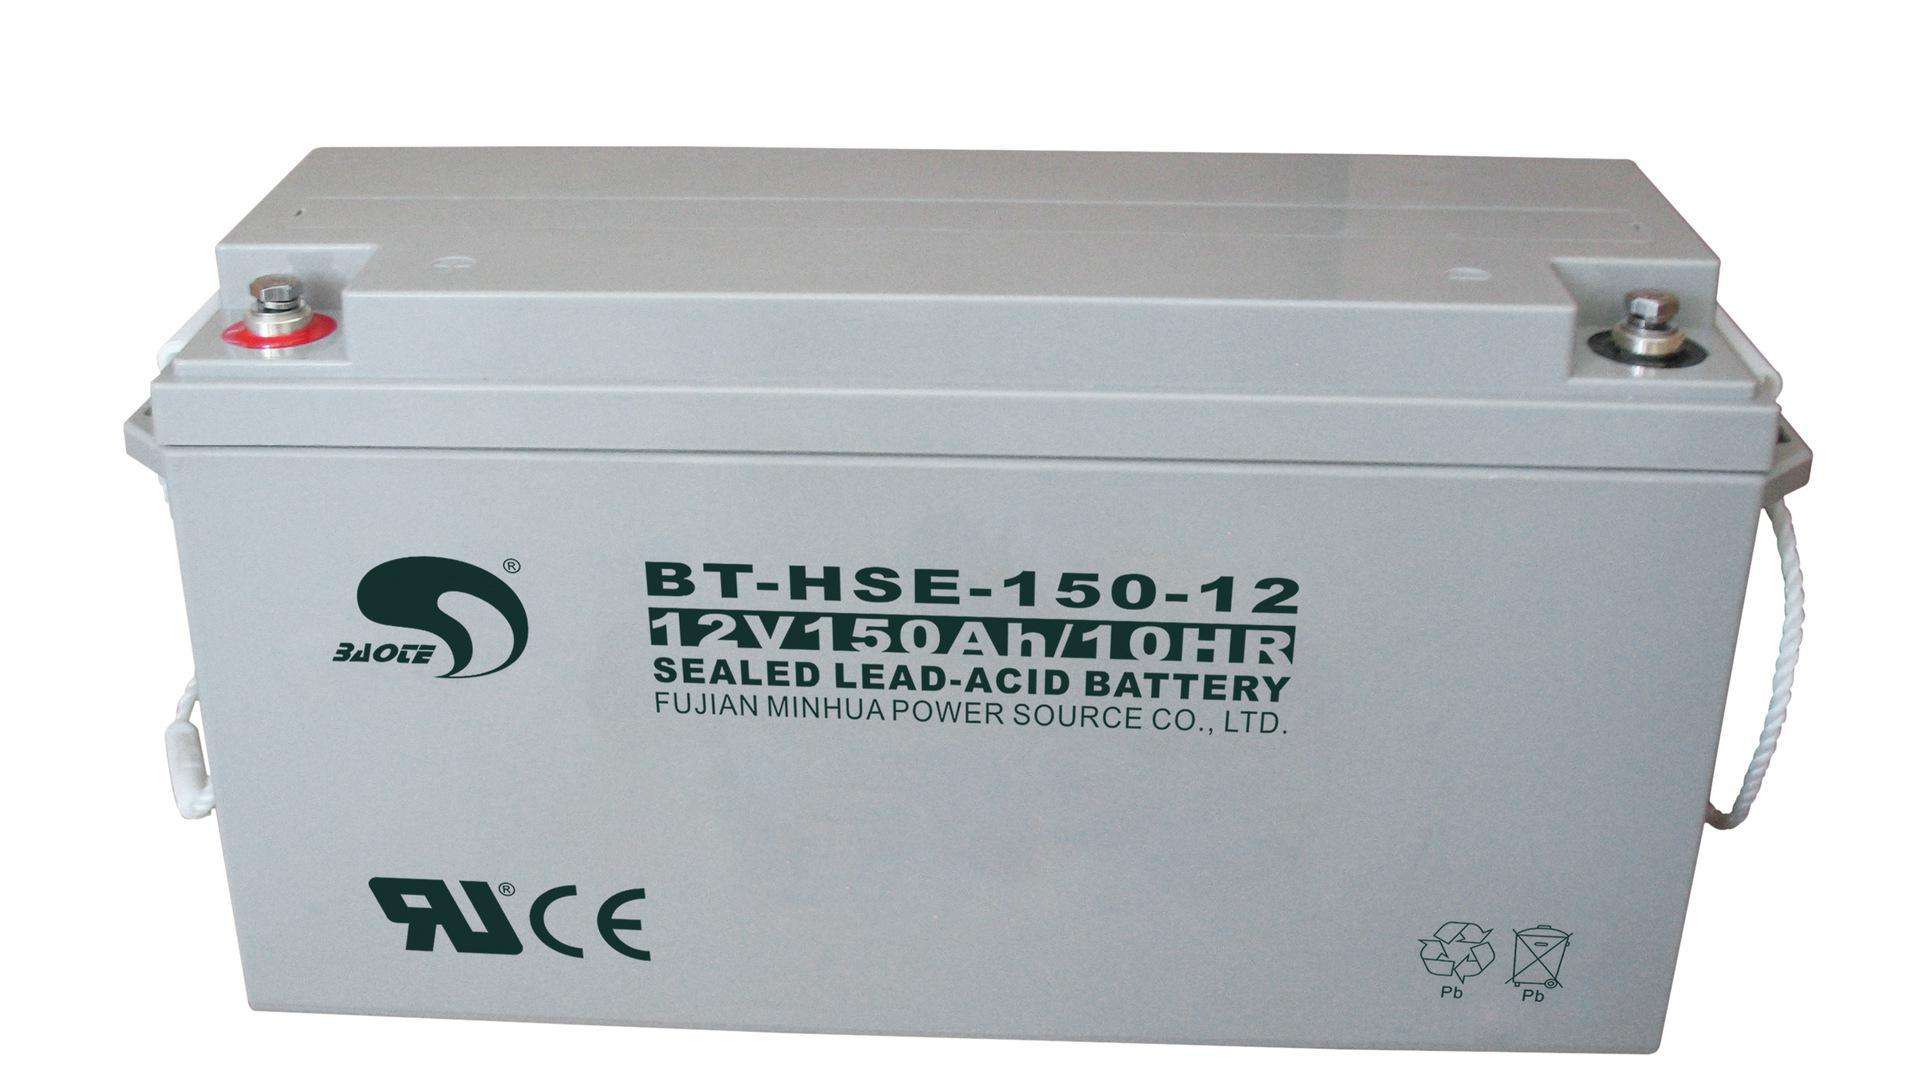 赛特蓄电池BT-HSE-250-12 12V250AH/10HR免维护铅酸